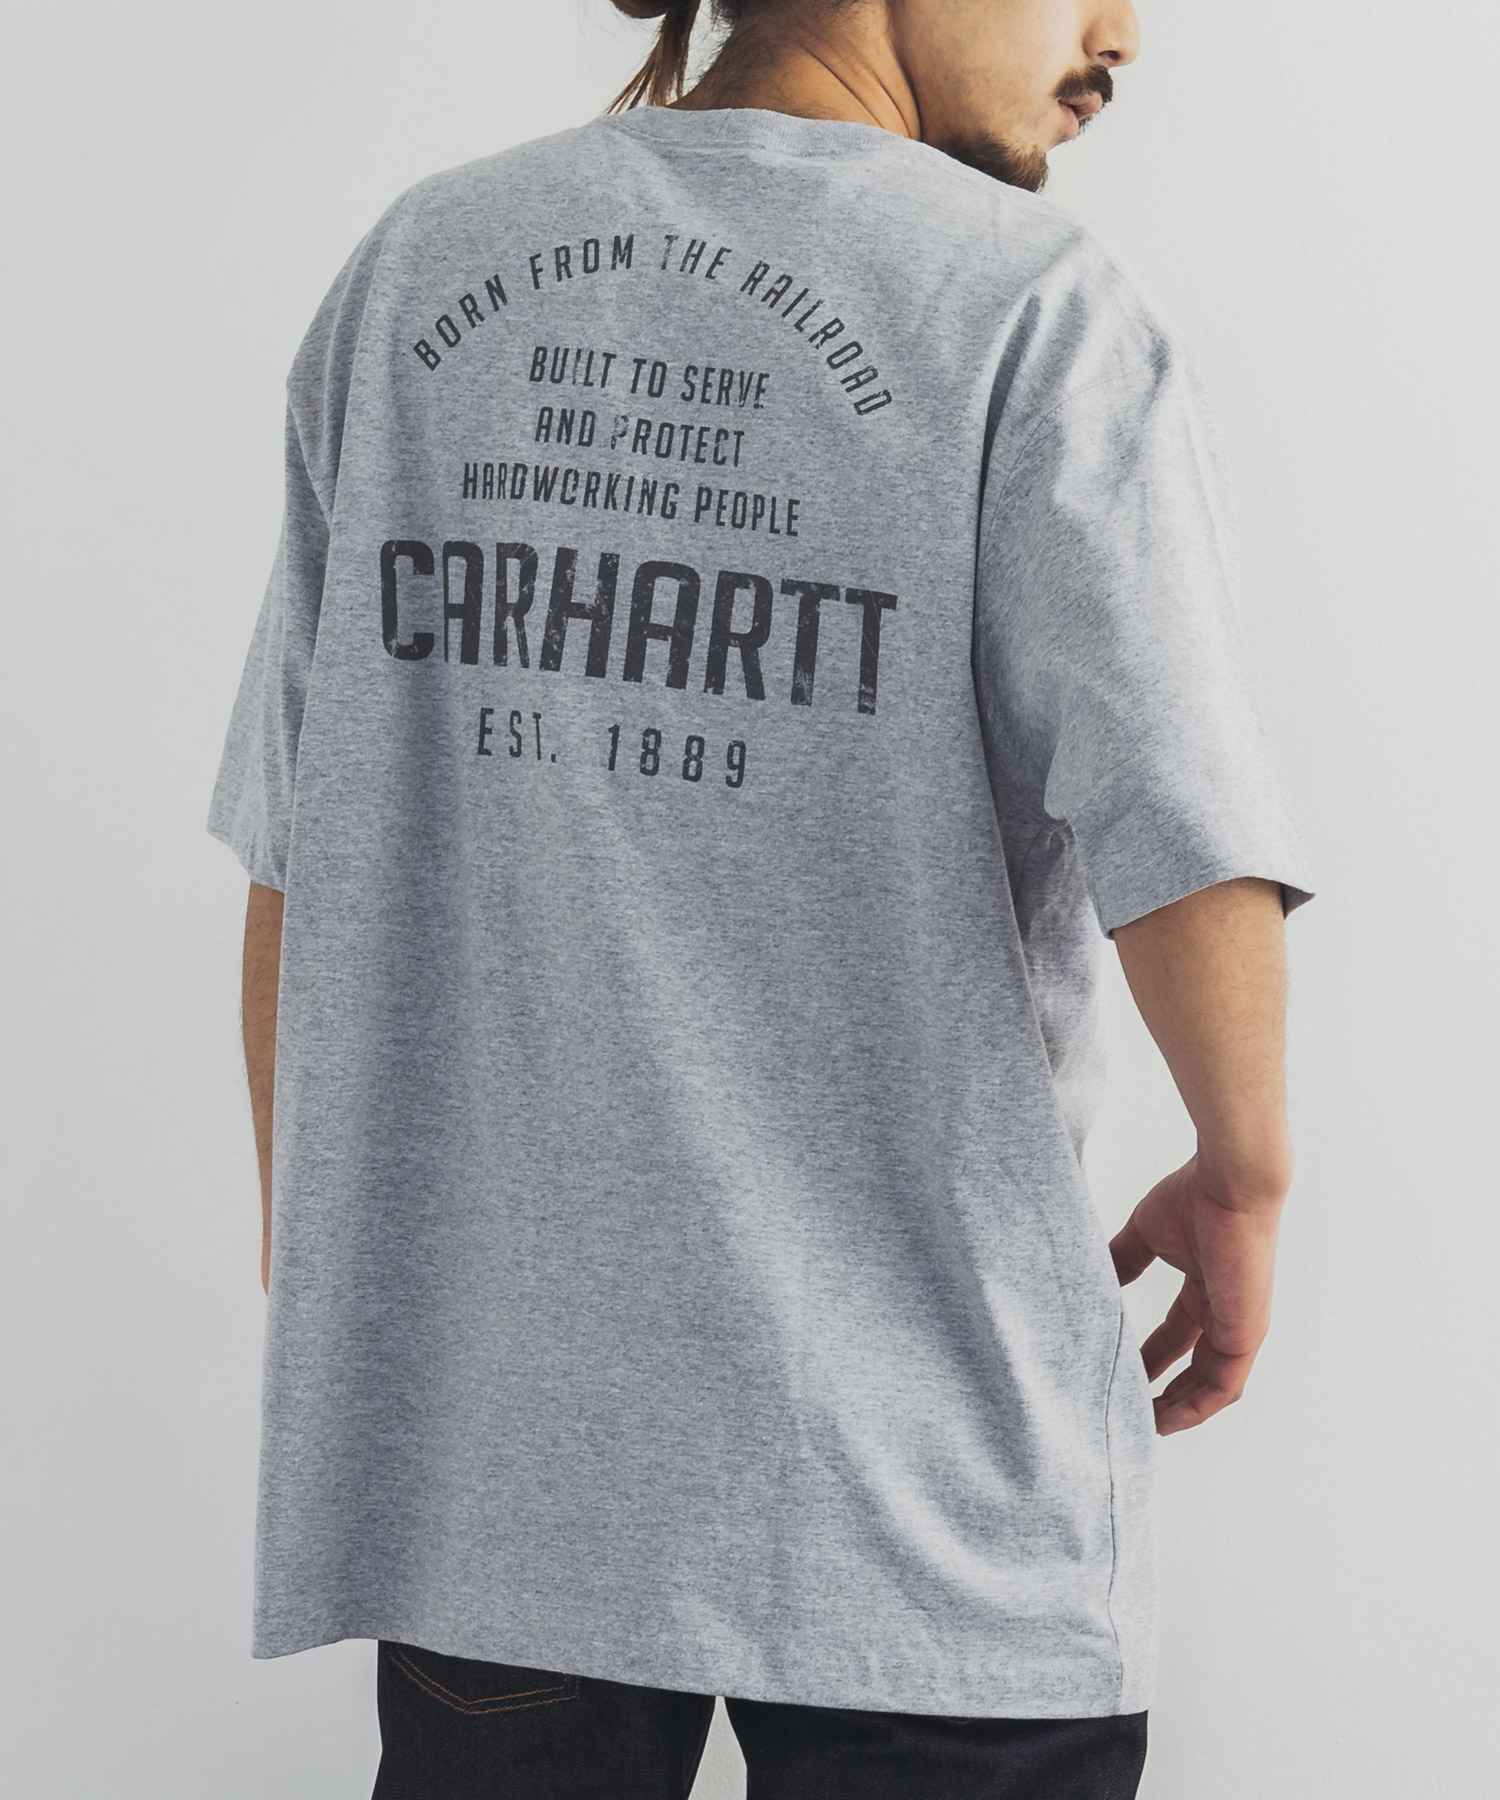 CARHARTT カーハート Tシャツ 半袖 メンズ ストリート カジュアル 